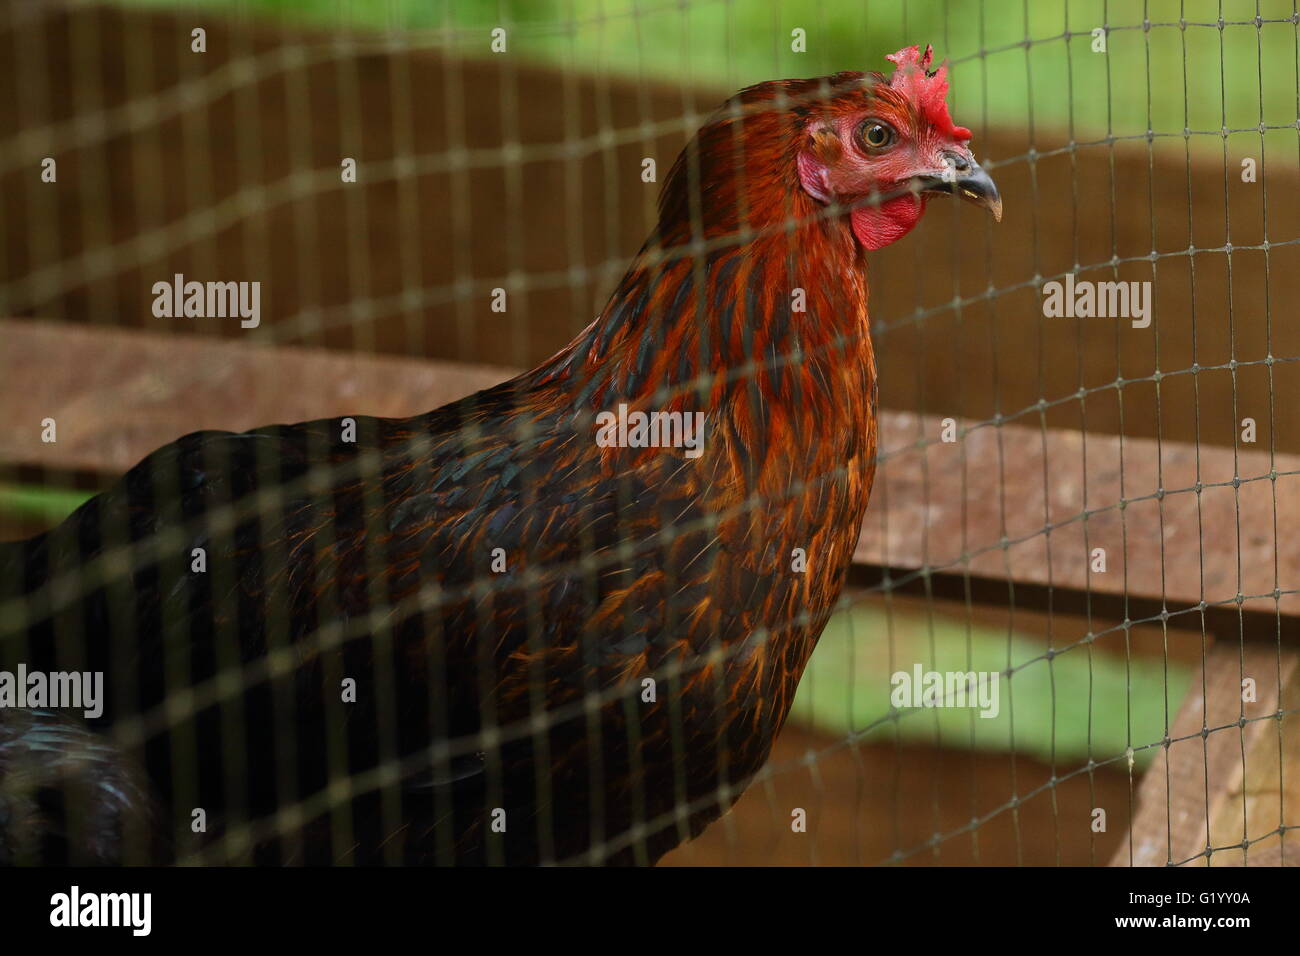 Negro y rojo pollo mirando con anhelo de una jaula. Foto de stock